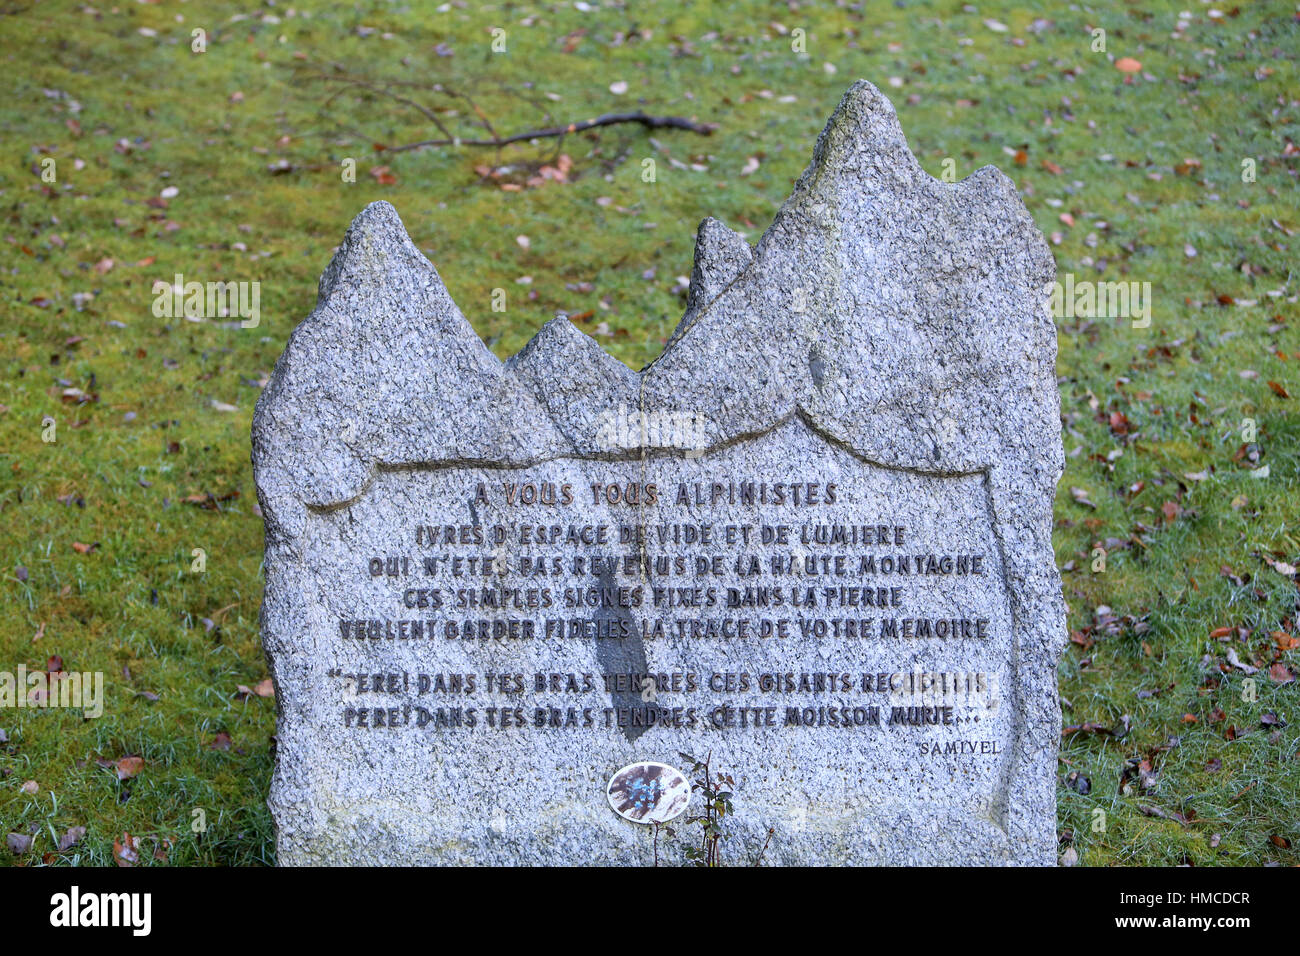 Inschrift auf einem Grabstein: "für alle Kletterer." Friedhof Chamonix. Stockfoto